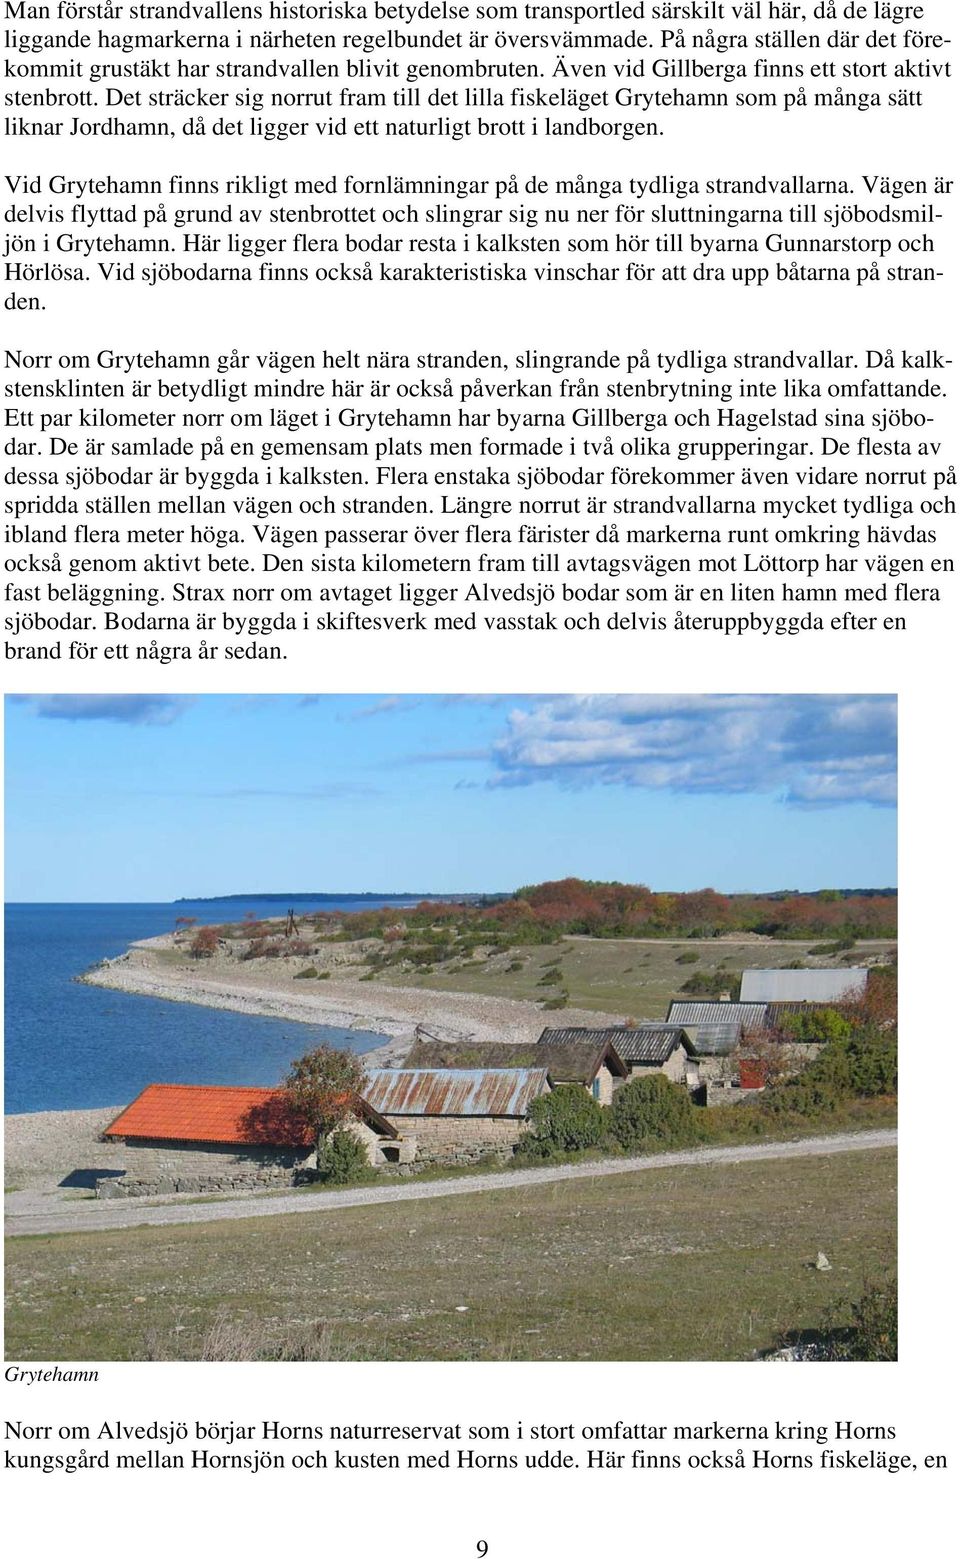 Det sträcker sig norrut fram till det lilla fiskeläget Grytehamn som på många sätt liknar Jordhamn, då det ligger vid ett naturligt brott i landborgen.